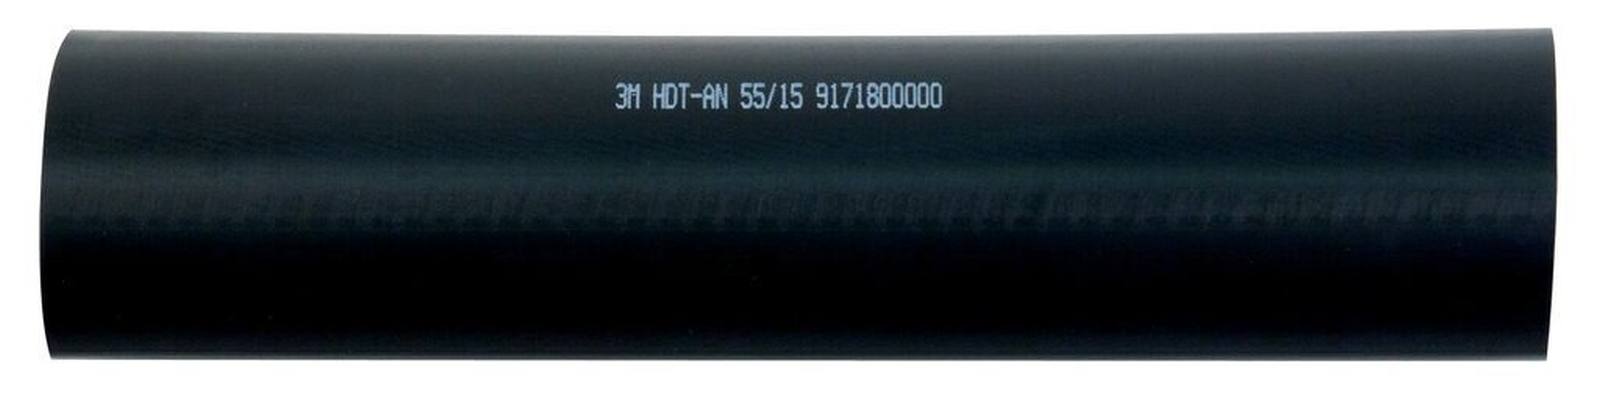  3M HDT-AN Paksuseinäinen lämpökutisteputki liimalla, musta, 55/15 mm, 1 m